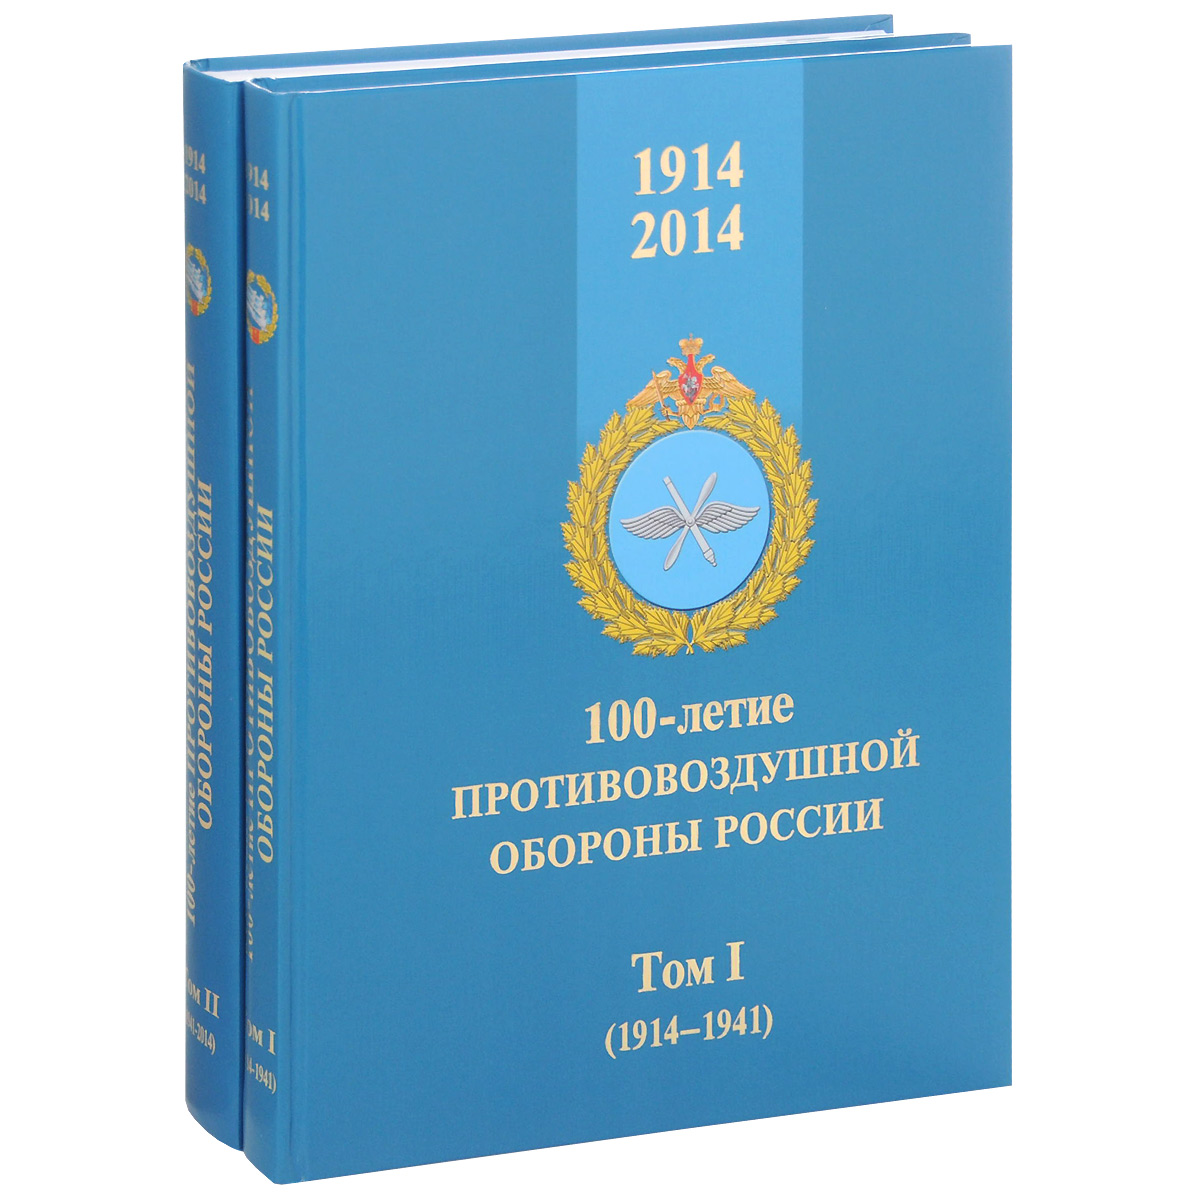 100-летие противовоздушной обороны России. 1914-2014. В 2 томах (комплект)